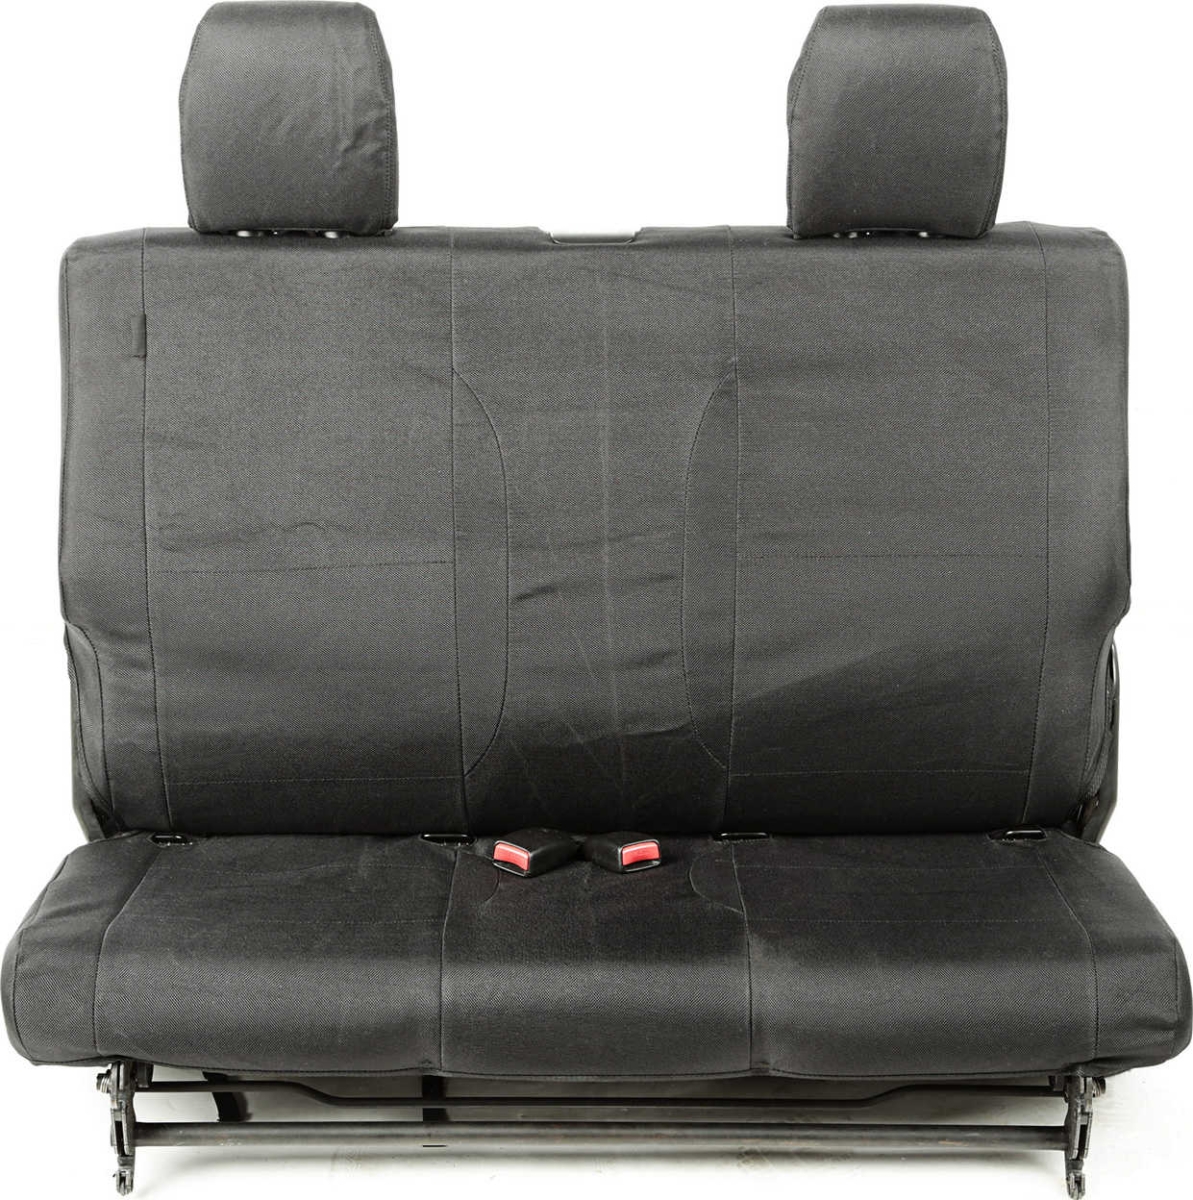 https://www.ks-tuning.de/images/product_images/popup_images/Sitzbezug-Polyester-Set-Vordersitze-und-Rueckbank-Elite-Ballistic-Seat-Cover-Set-black-Jeep-Wrangler-JK-BJ-07-10-2-Door-1325601-4.jpg